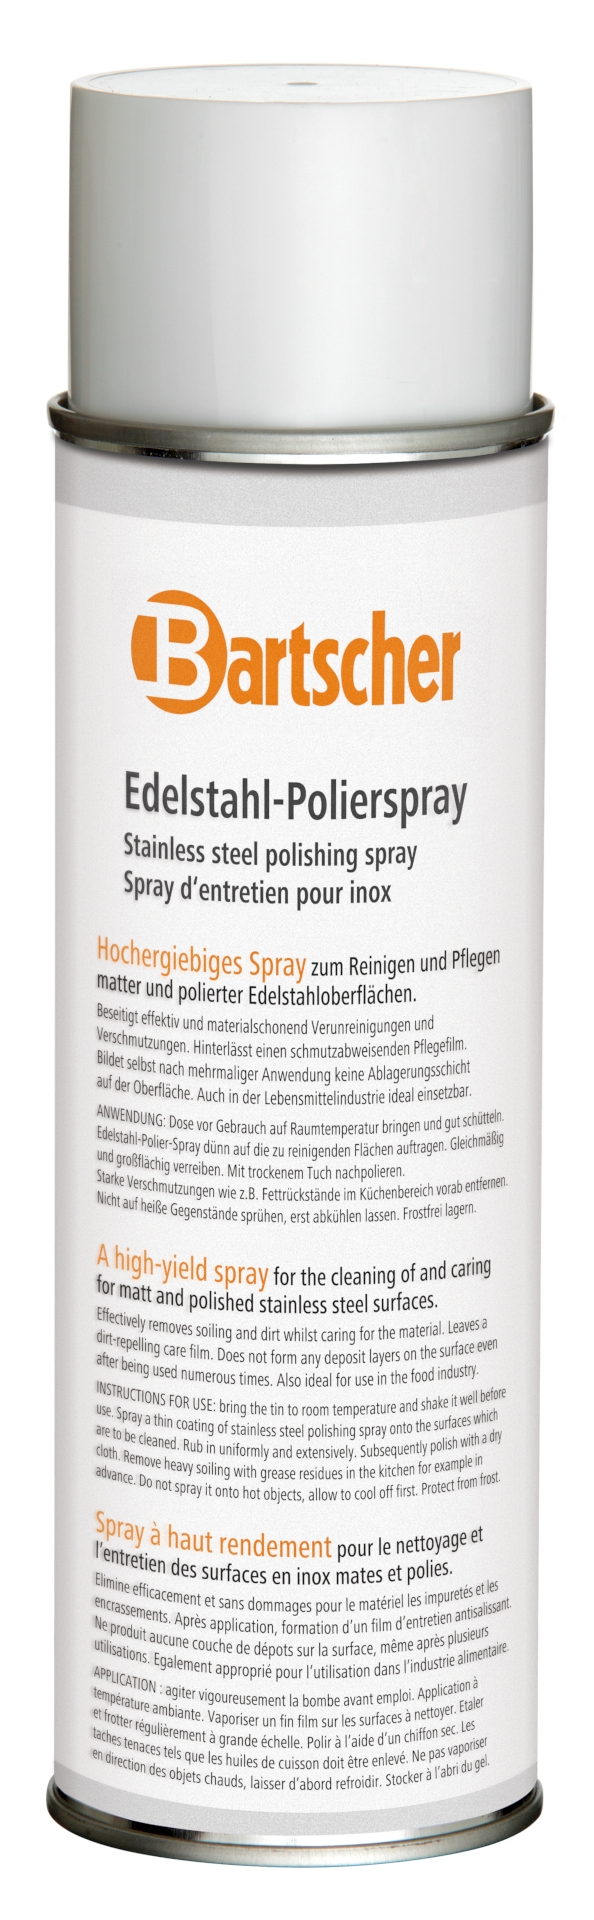 Bartscher Edelstahl-Polierspray 500ml DS